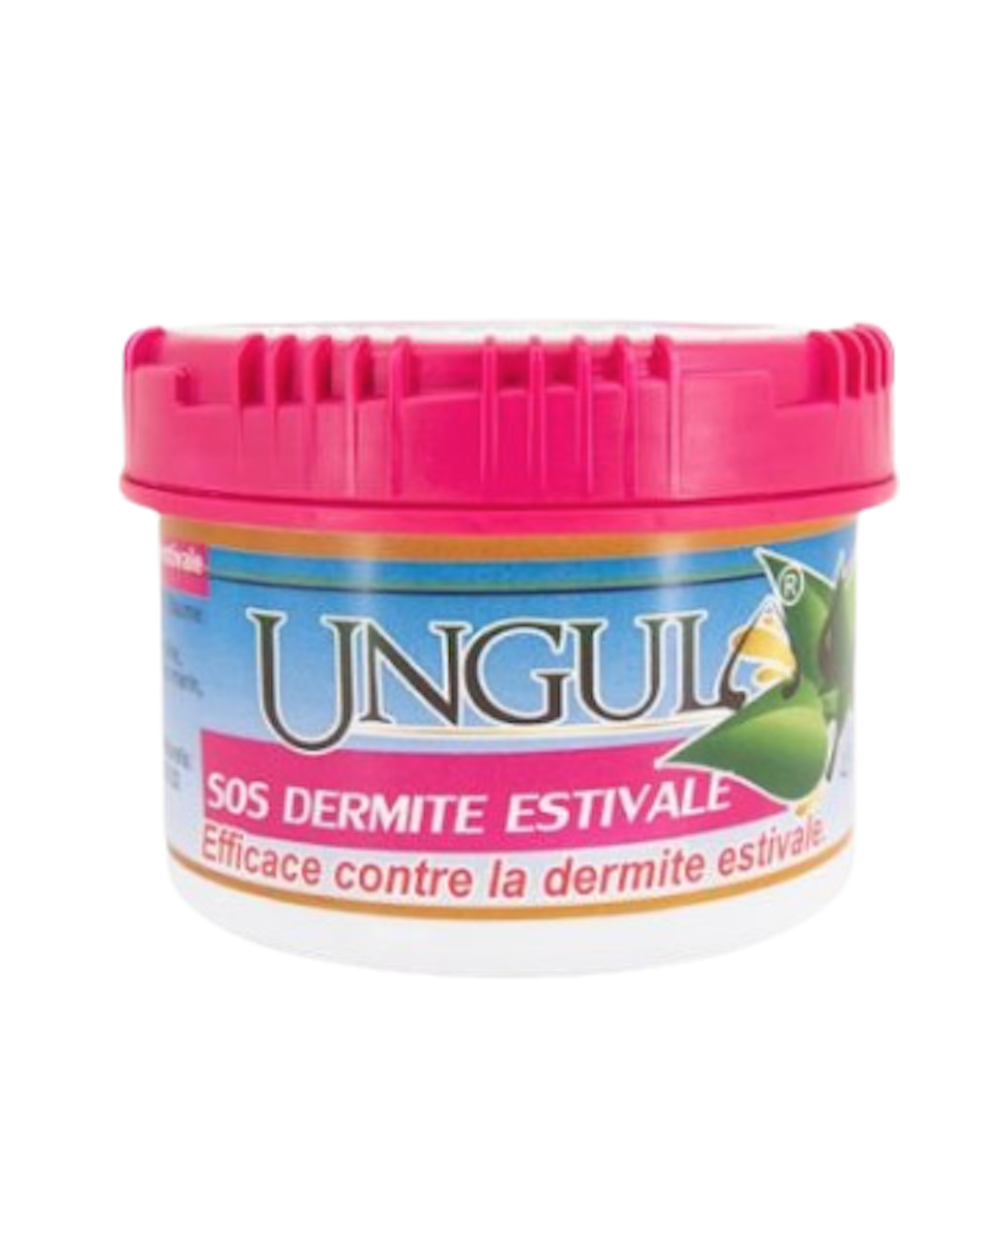 Sos Dermite Estivale Ungula - 480 ml  ungula Soins peaux, robes, crins